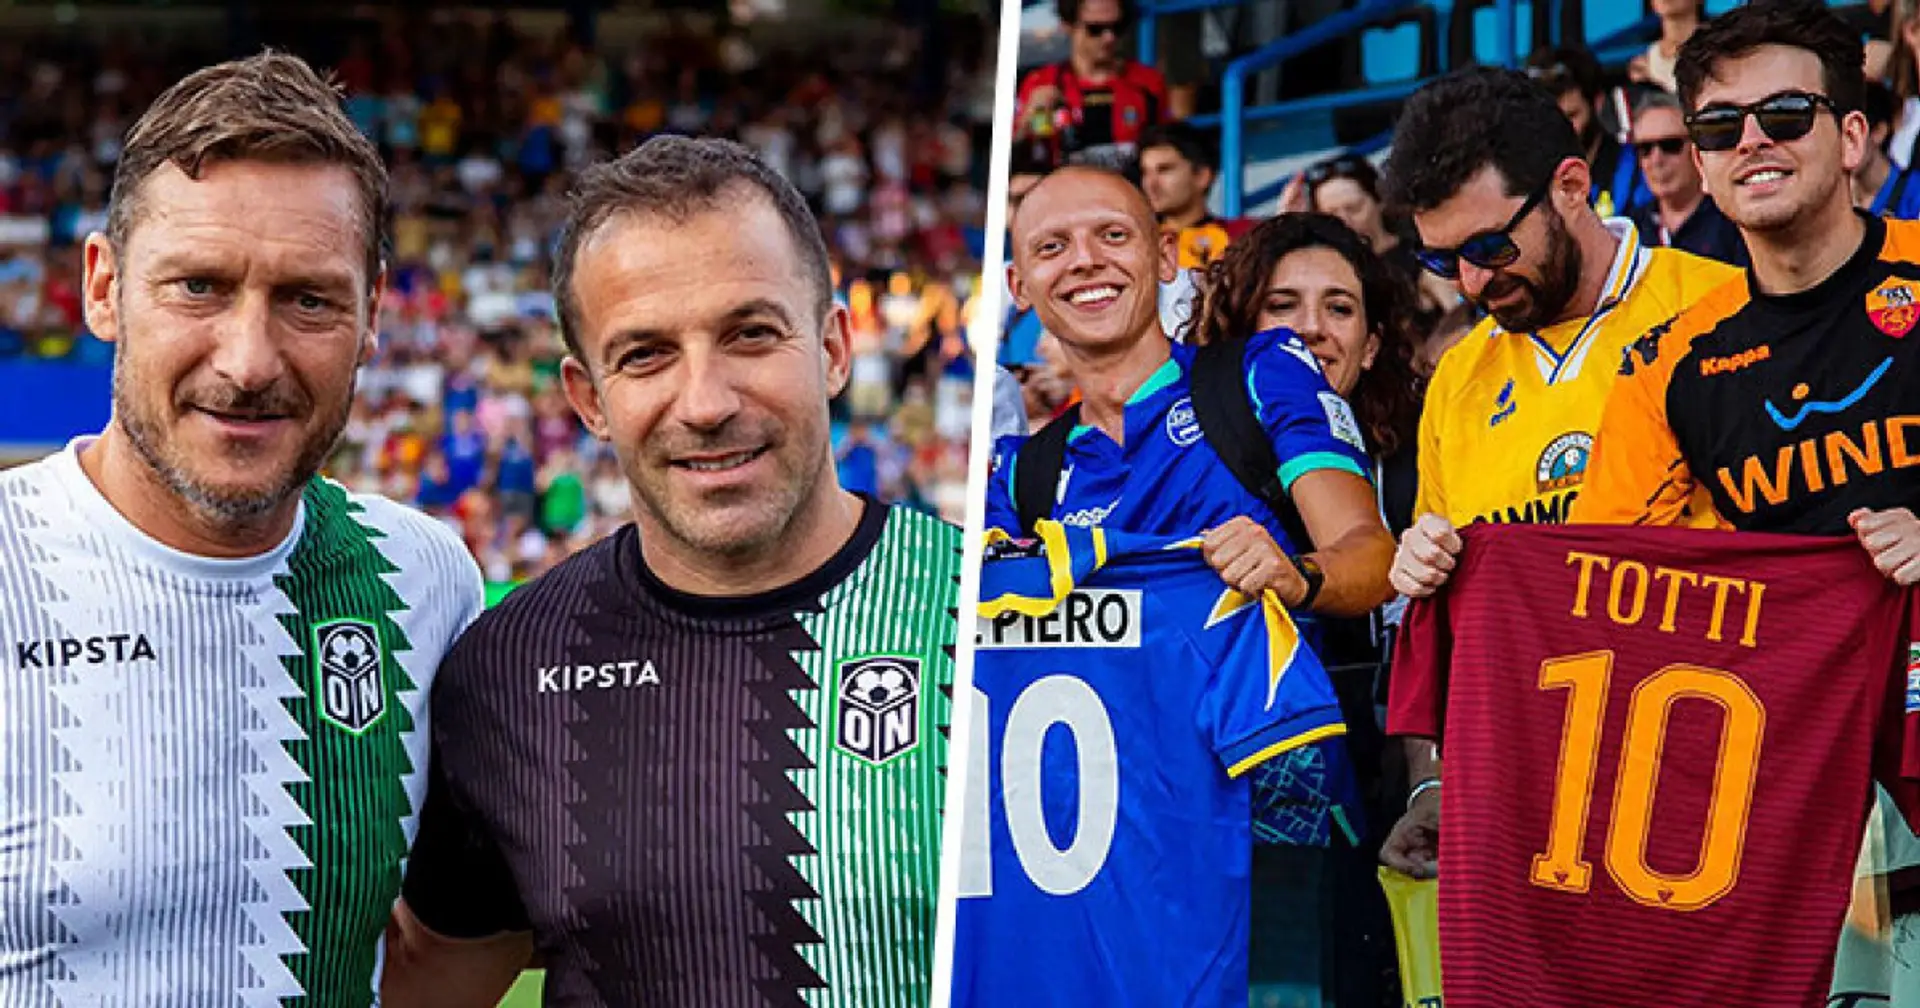 Totti und Del Piero spielen wieder: Ihre Retro-Spiele sind eine herzerwärmende Geschichte von Träumen der Fans